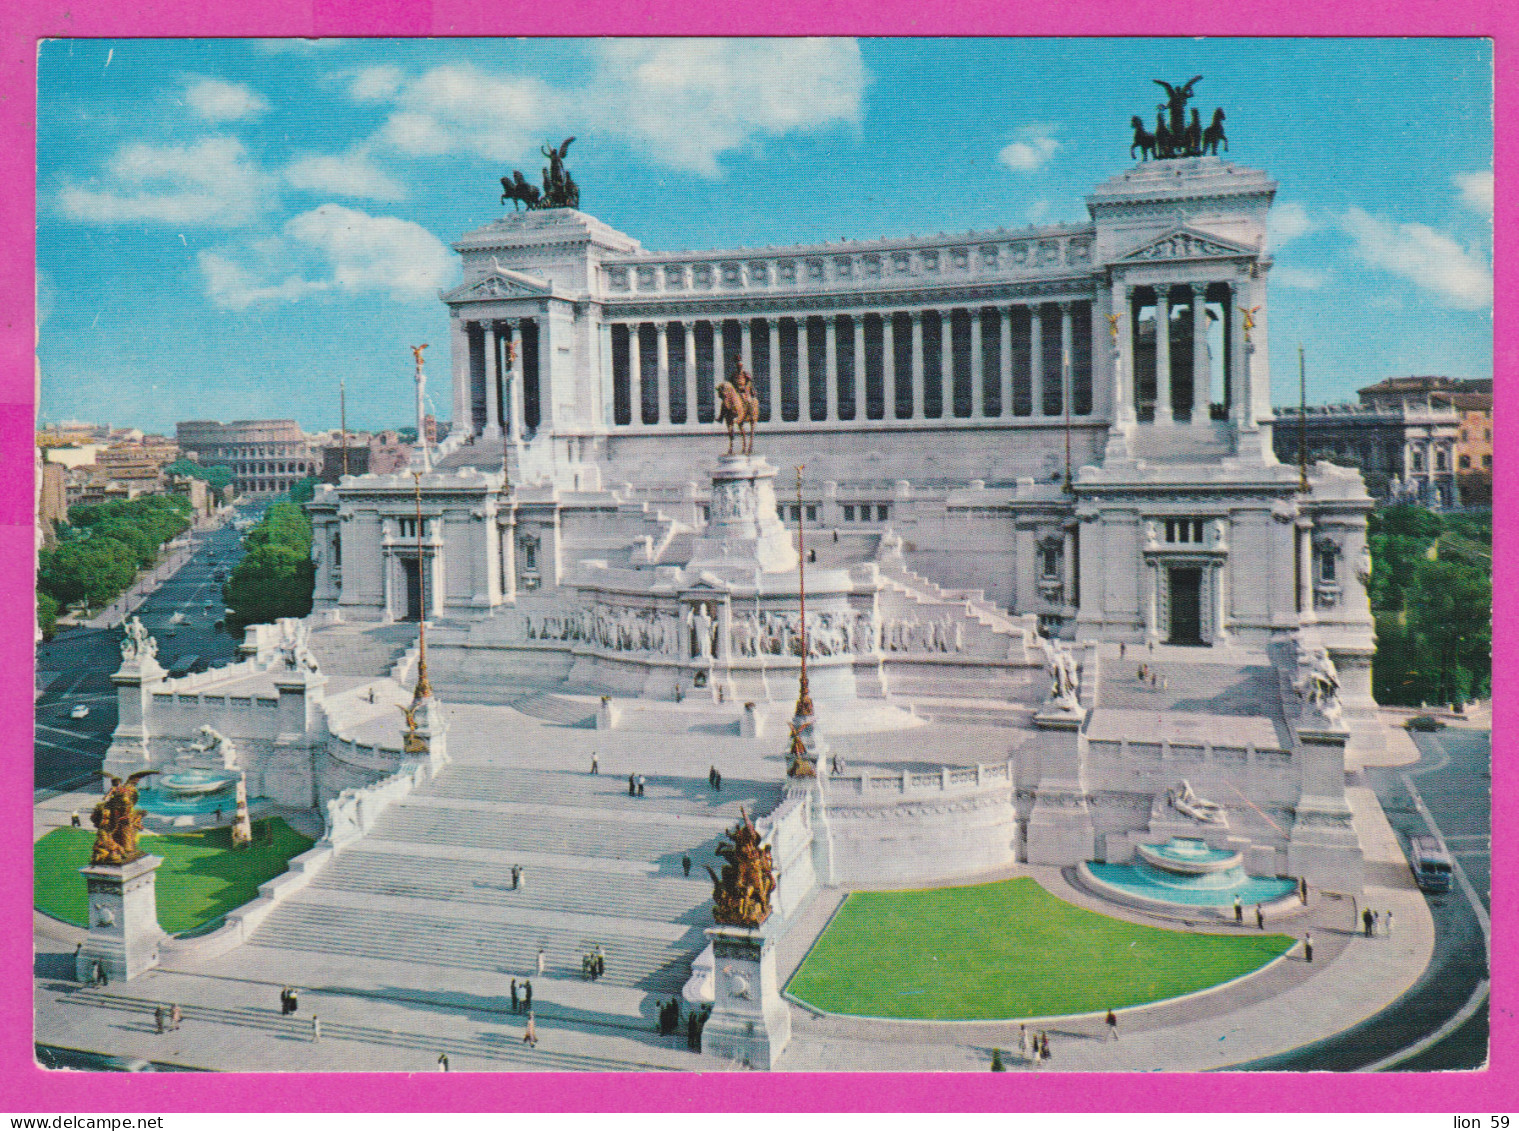 290457 / Italy - Roma (Rome) - Aerial View Monumento A Vittorio Emanuele II (Altare Della Patria) PC 209/V973 Italia - Altare Della Patria